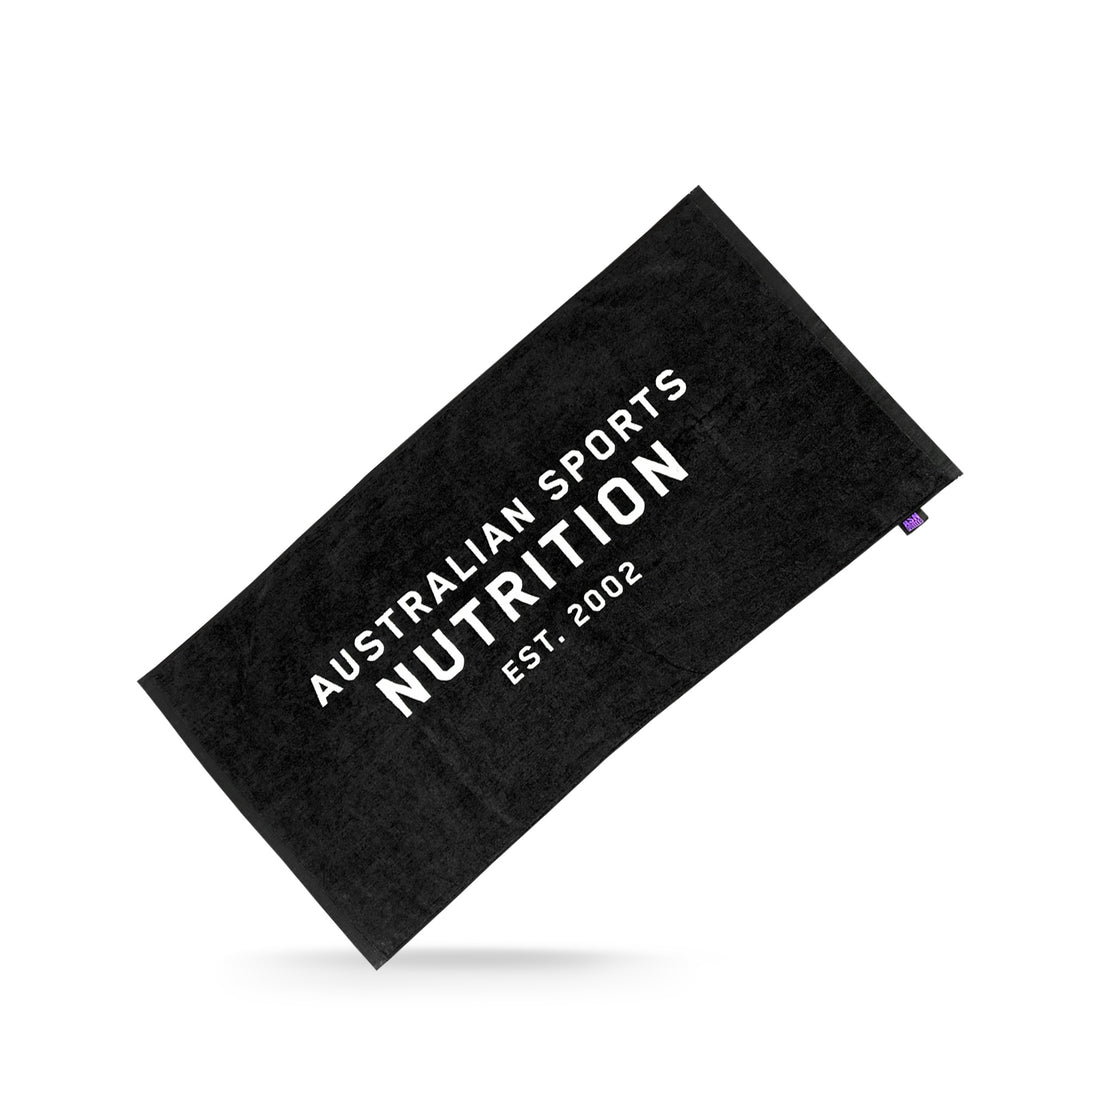 Australian Sports Nutrition Towel - Black